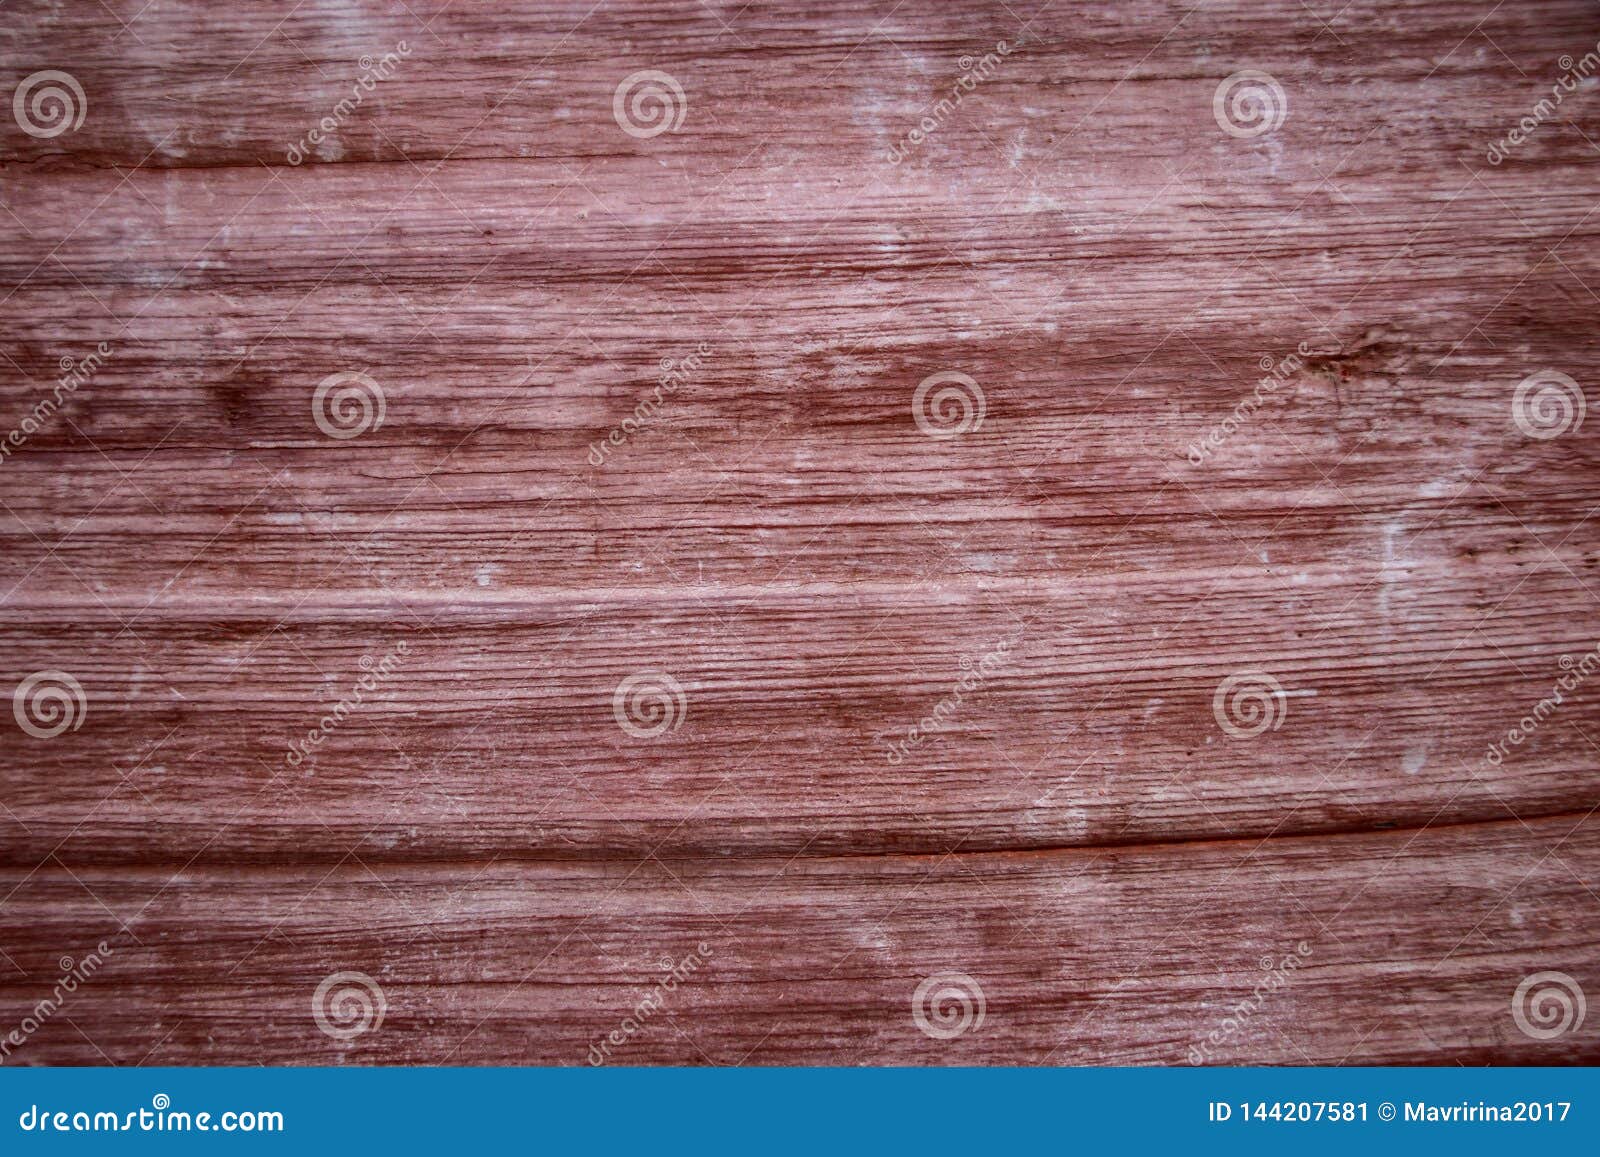 Hình nền vân gỗ đỏ: Sự độc đáo và tinh tế được kết hợp hoàn hảo trong những hình nền vân gỗ đỏ. Với những đường nét tỉ mỉ, hoa văn độc đáo, tạo nên cái nhìn đẹp mắt khiến bạn không thể rời mắt khỏi màn hình. Hãy truy cập ngay để khám phá và thưởng thức!